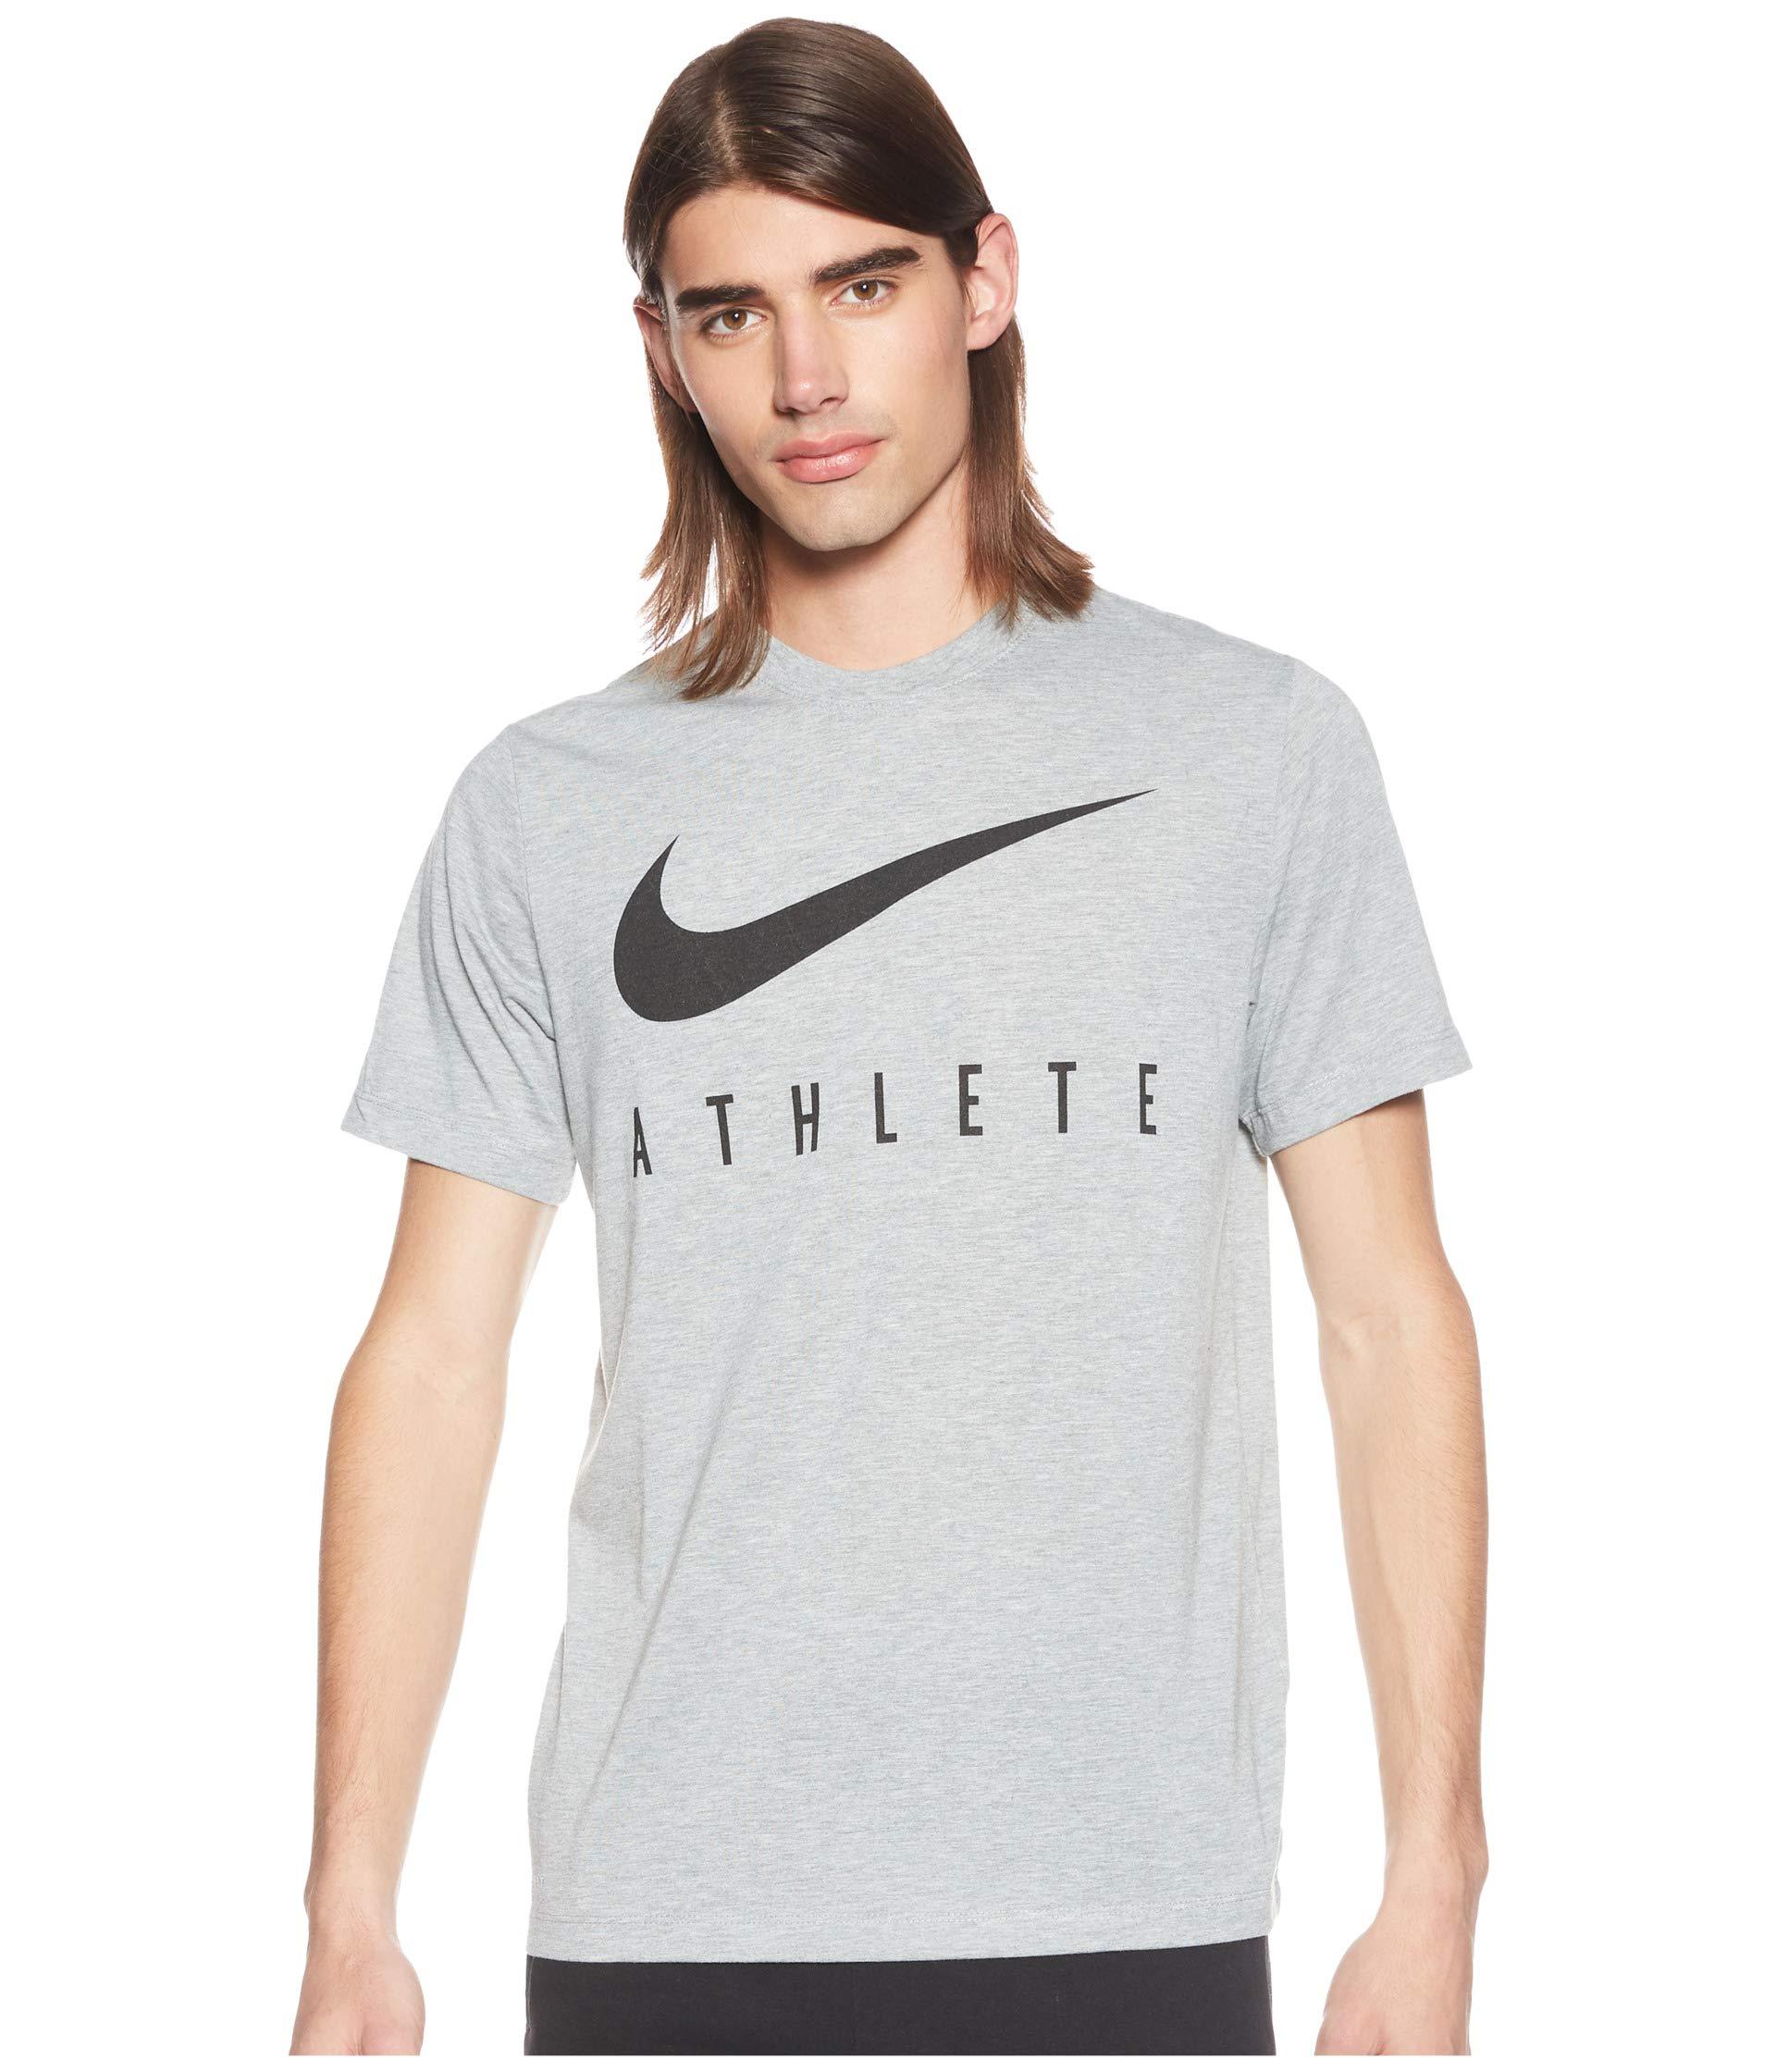 Nike Athlete T-shirt in Gray for Men | Lyst